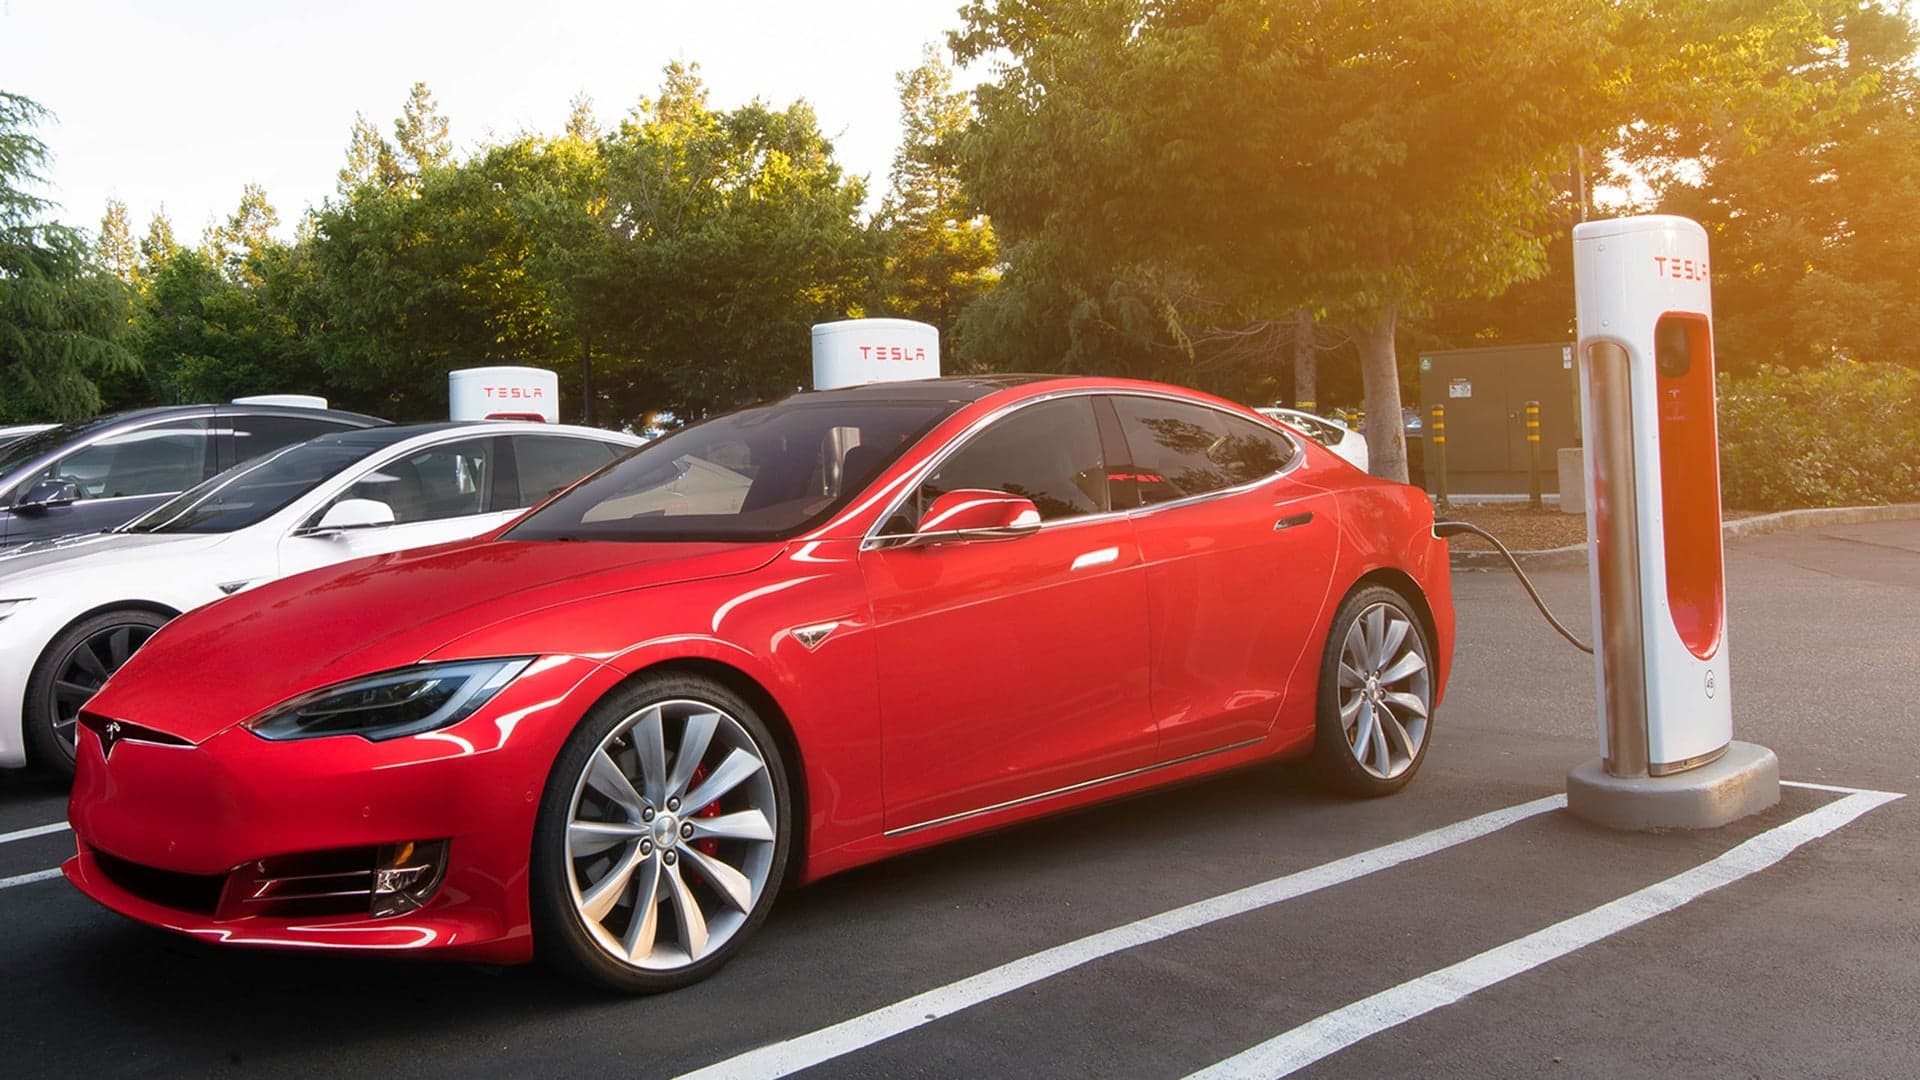 Tesla Supercharger V3 Hinted at Development